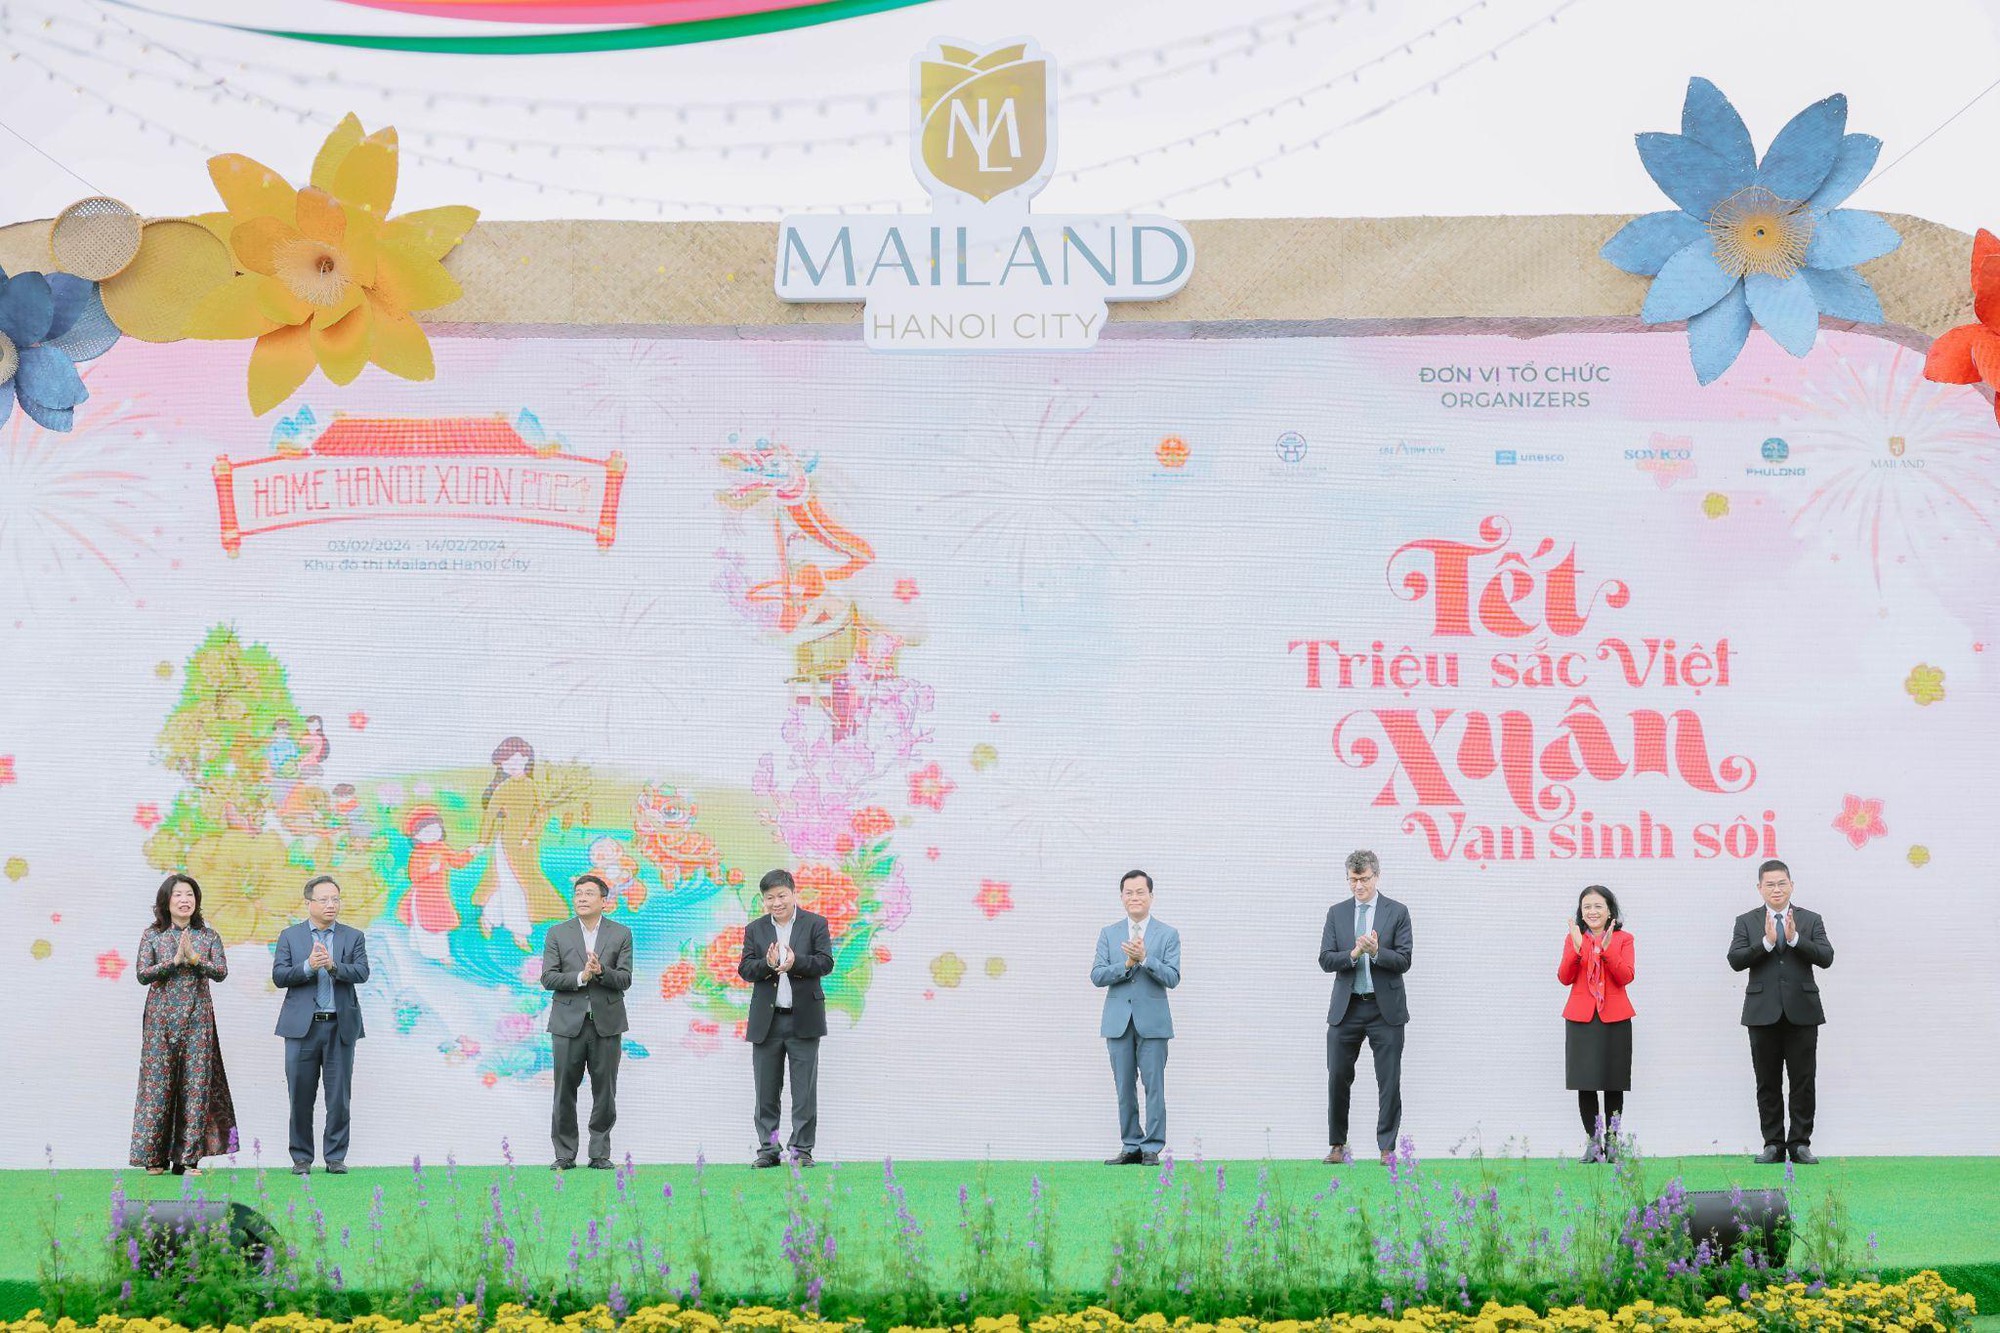 Hàng ngàn lượt khách hào hứng trải nghiệm “Tết triệu sắc Việt, Xuân vạn sinh sôi” trên đường hoa Home Hanoi Xuan 2024- Ảnh 1.